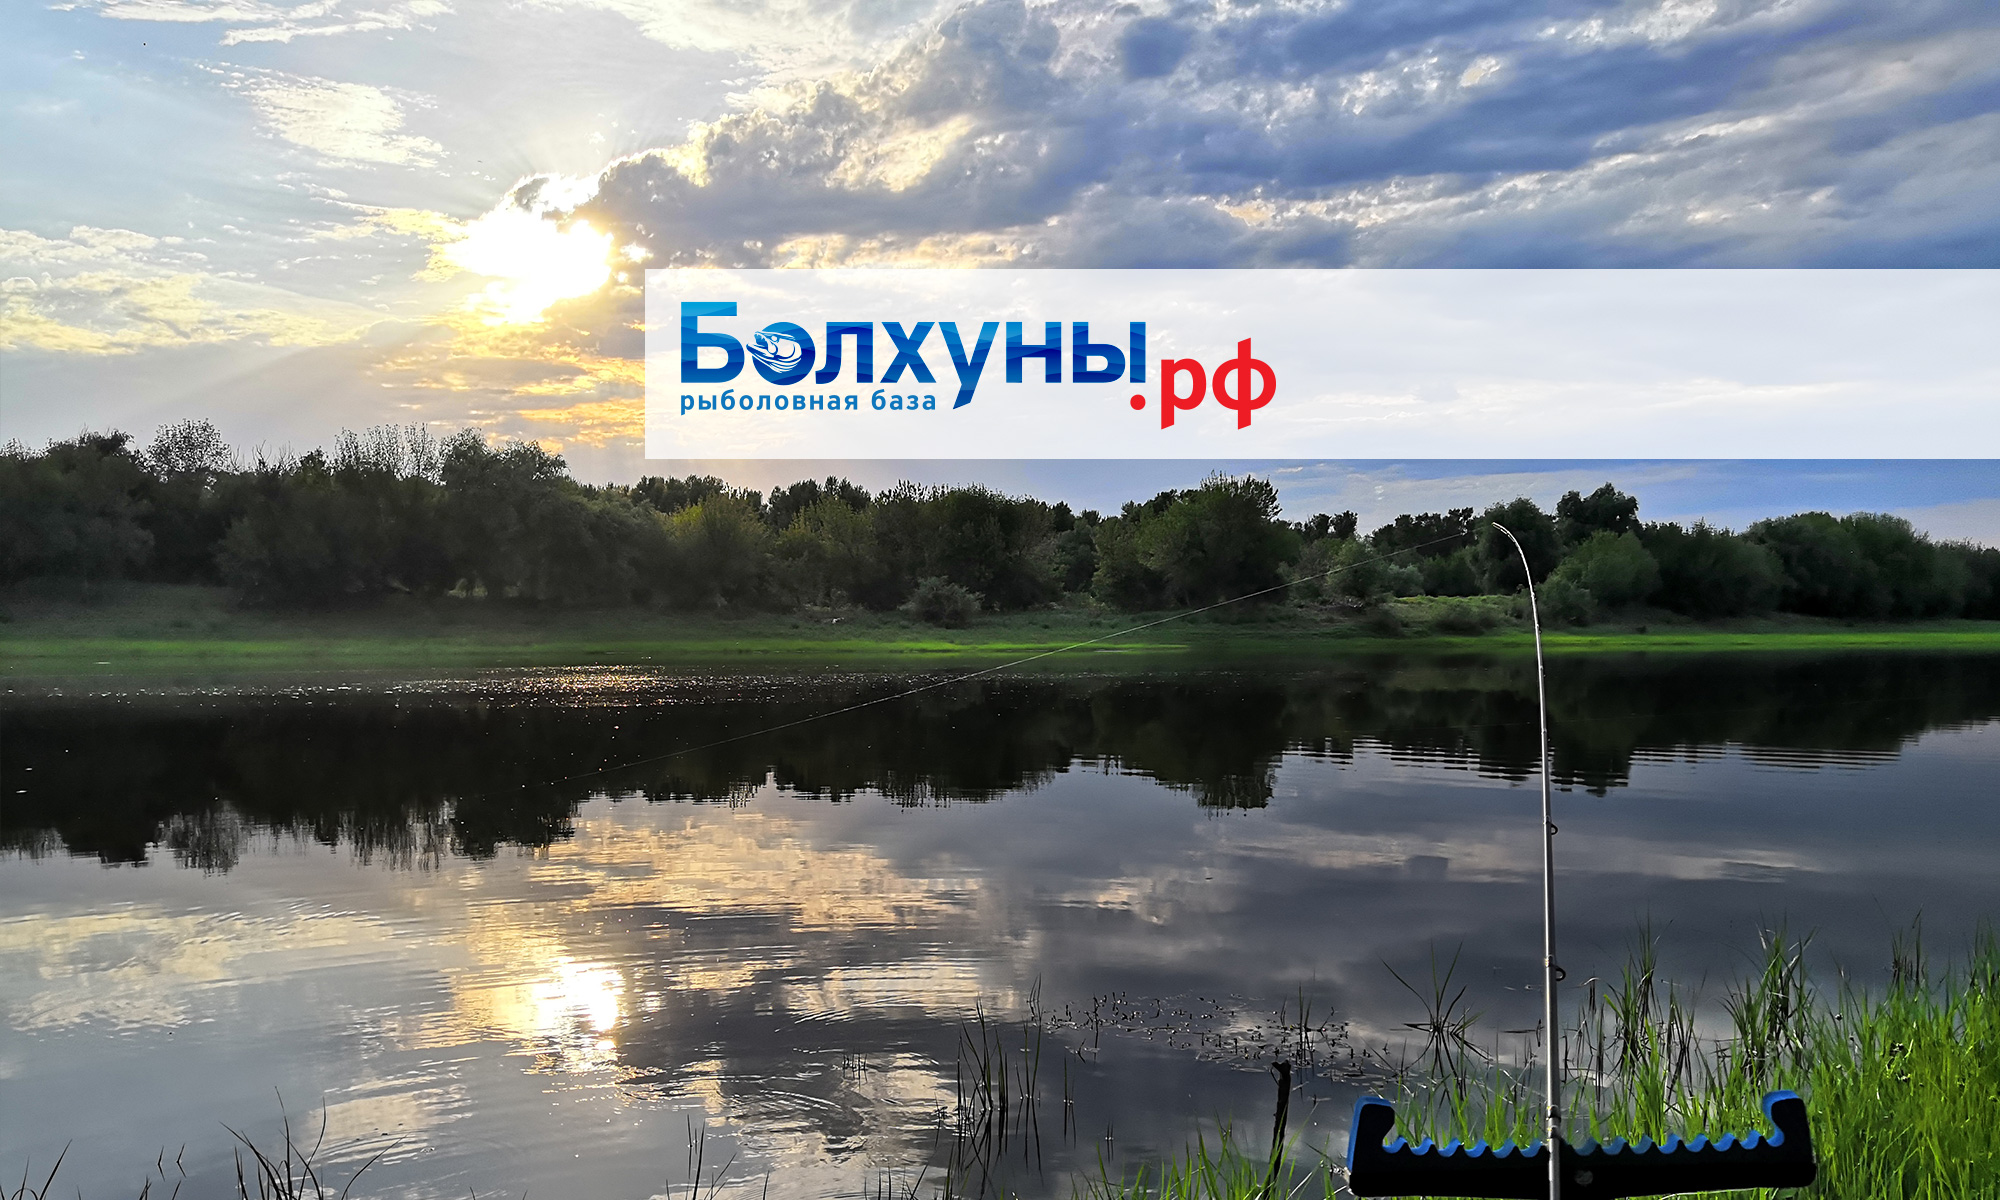 Рыболовная база Болхуны.РФ